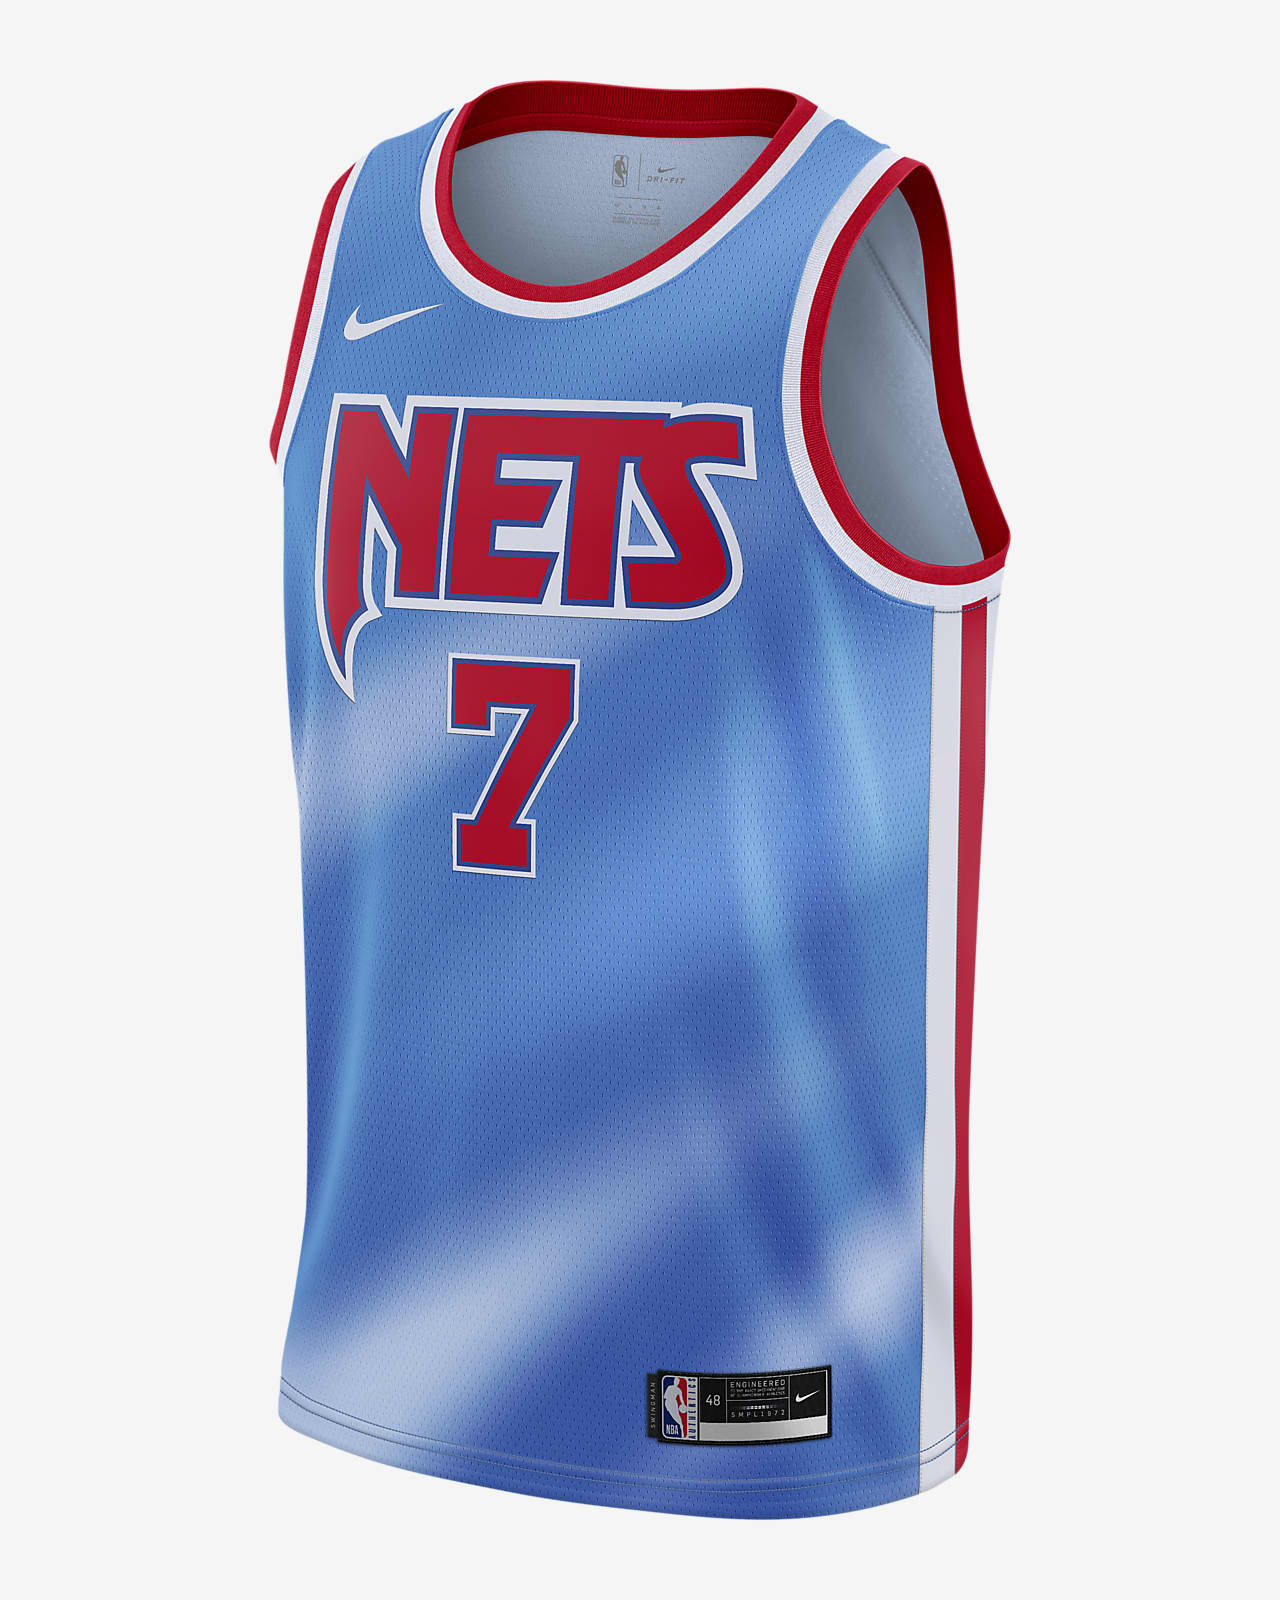 2020 赛季布鲁克林篮网队 Classic Edition Nike NBA Swingman Jersey 男子球衣